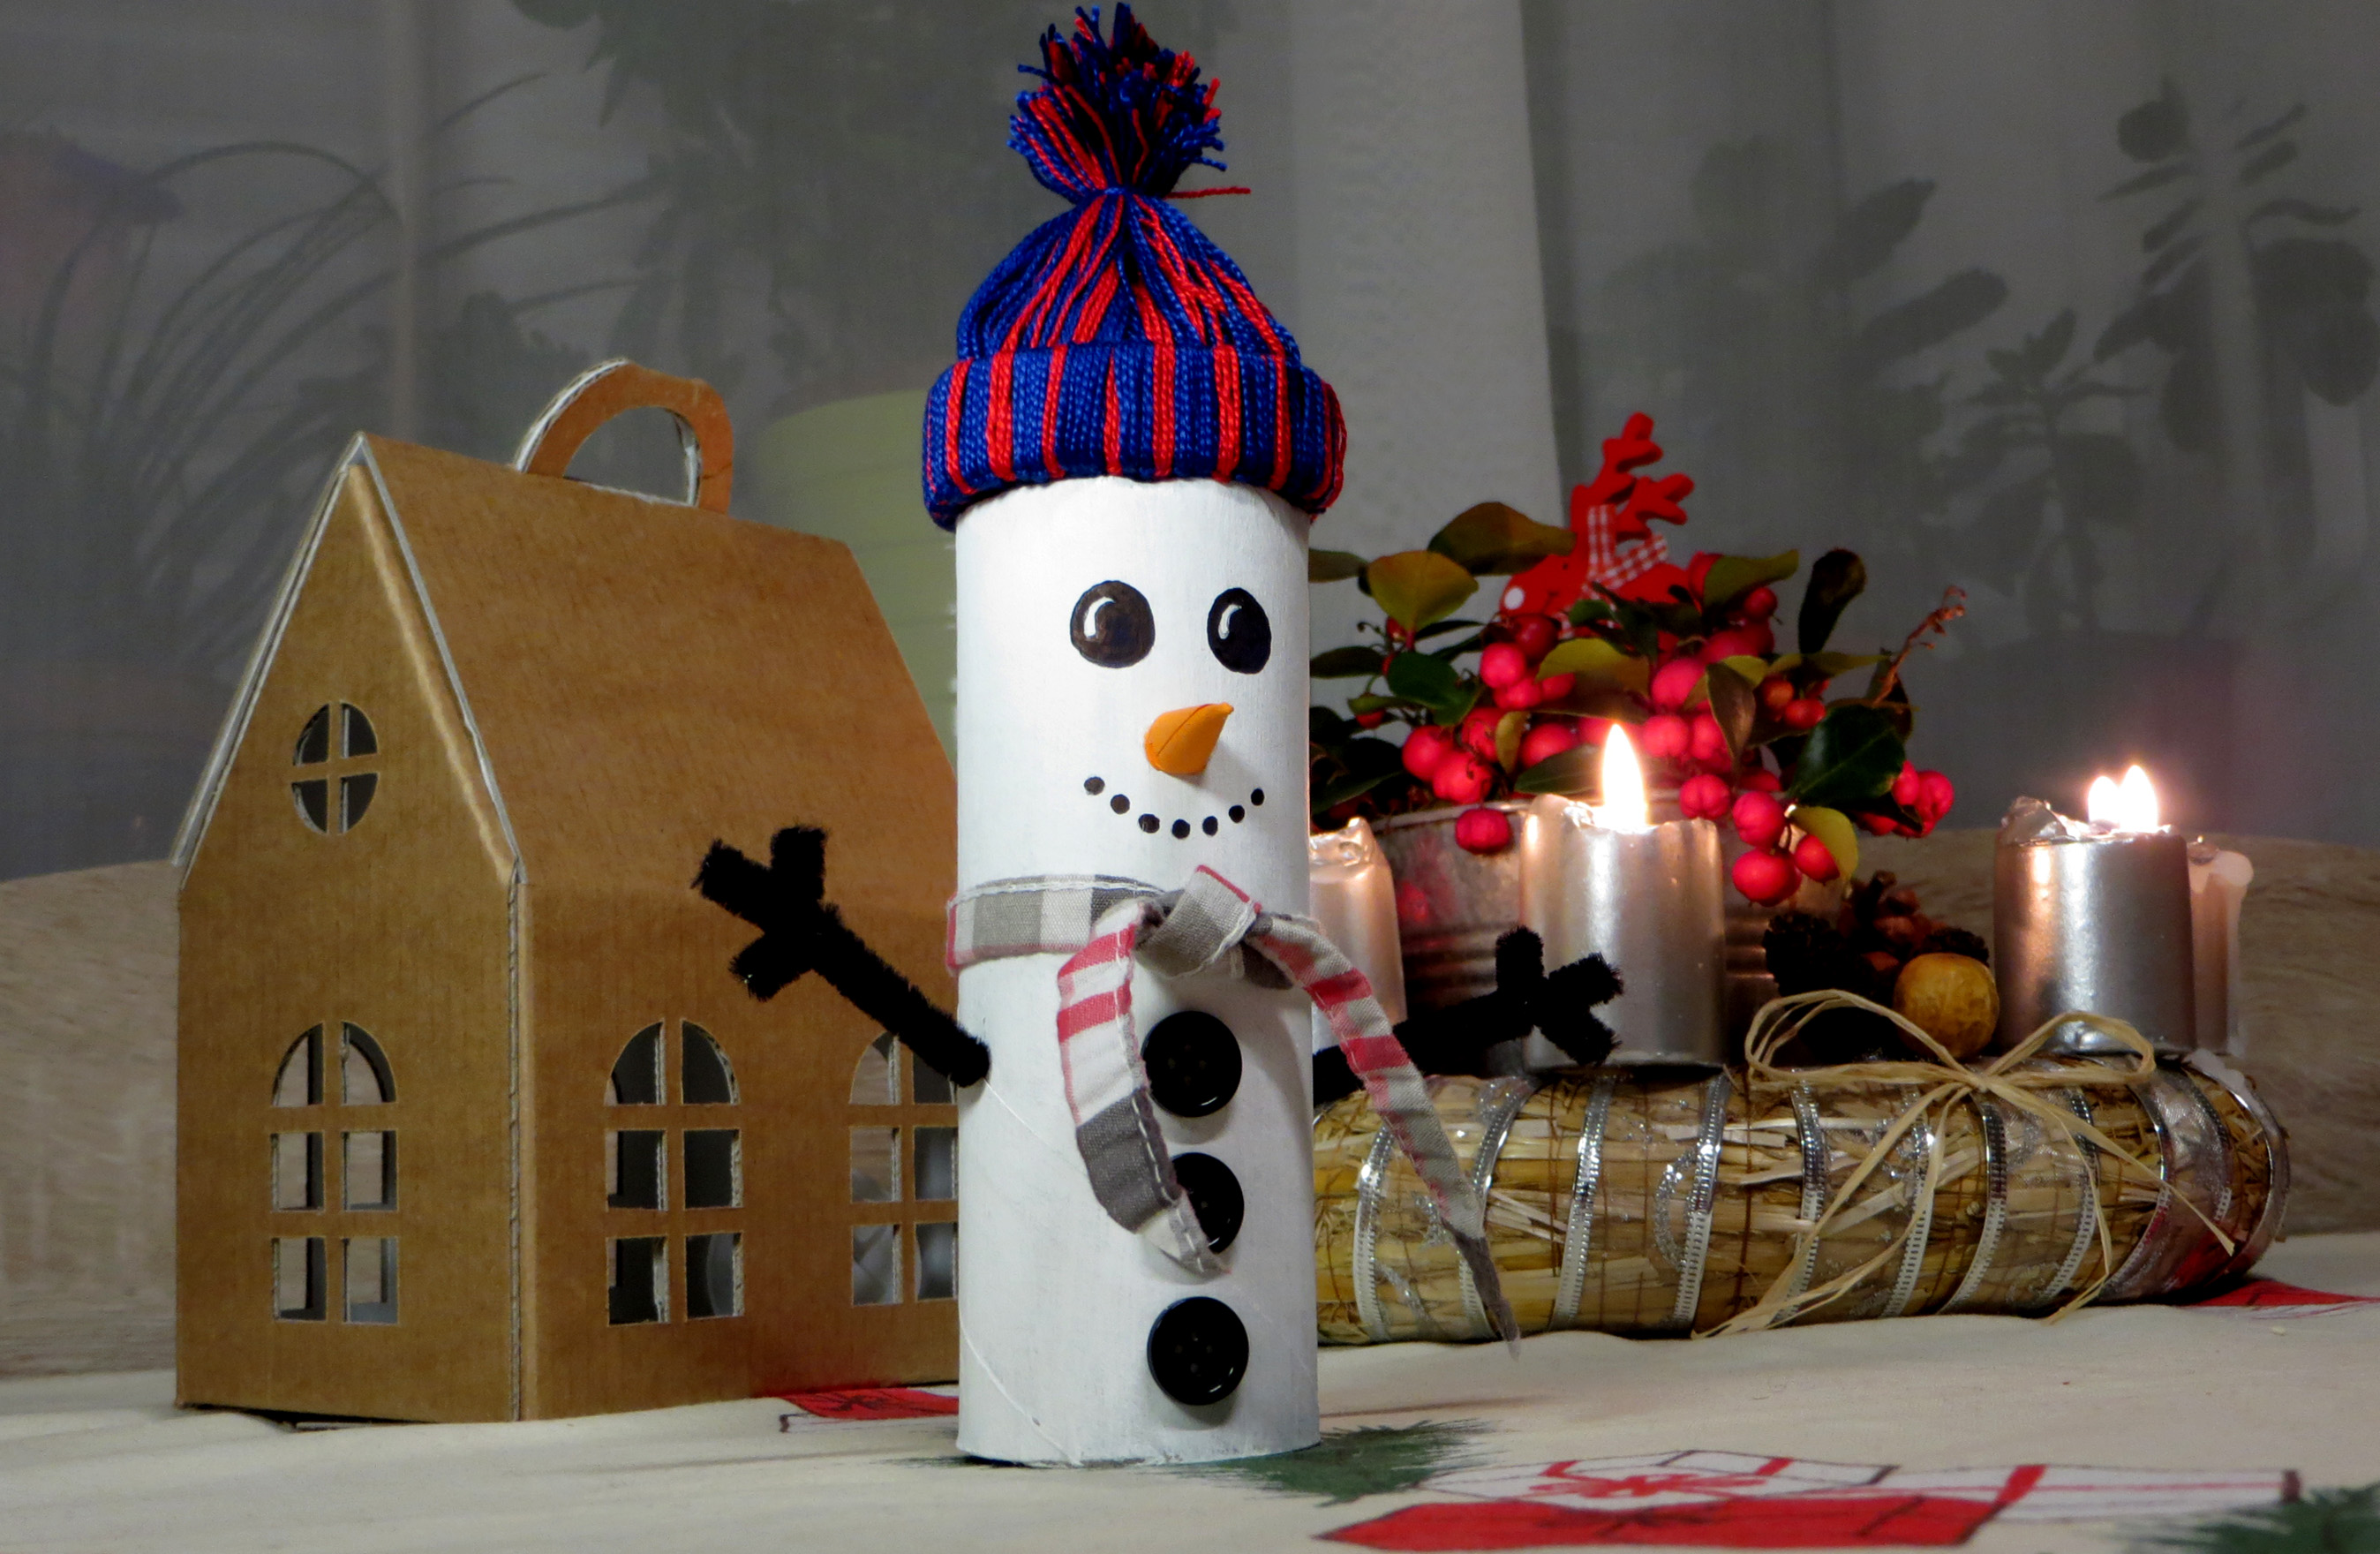 könnyű olcsó hóember karton tél kreatív DIY újrahasznosítás recycle együtt dekoráció gyerekekkel